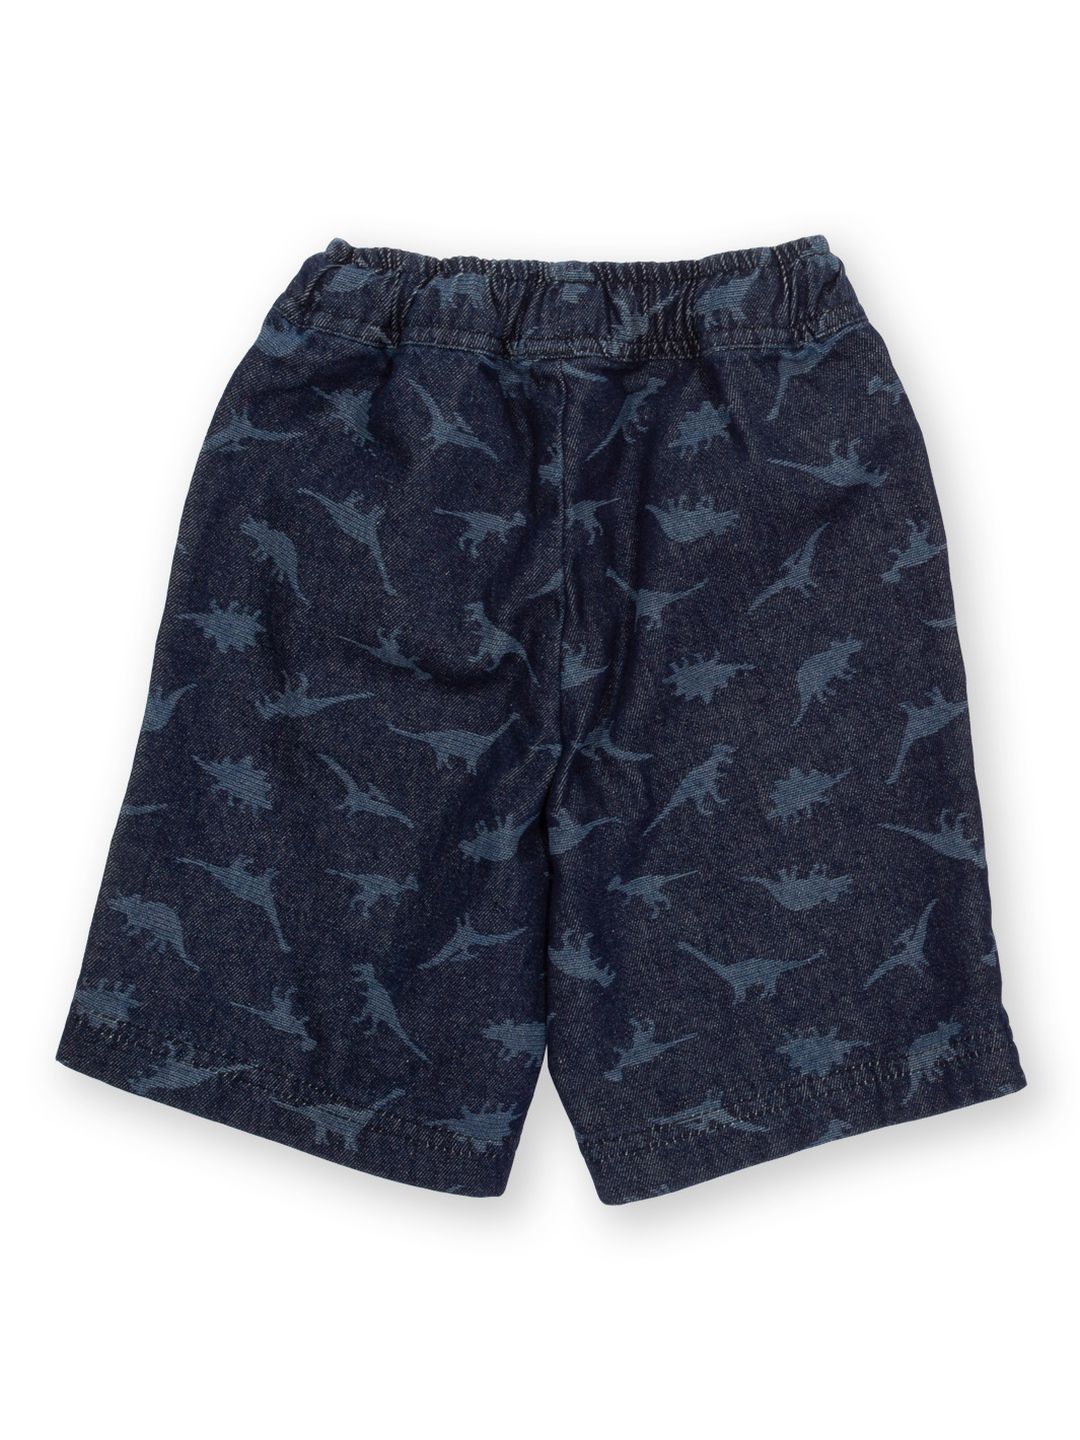 Shorts Dino Denim Navy von Kite Clothing